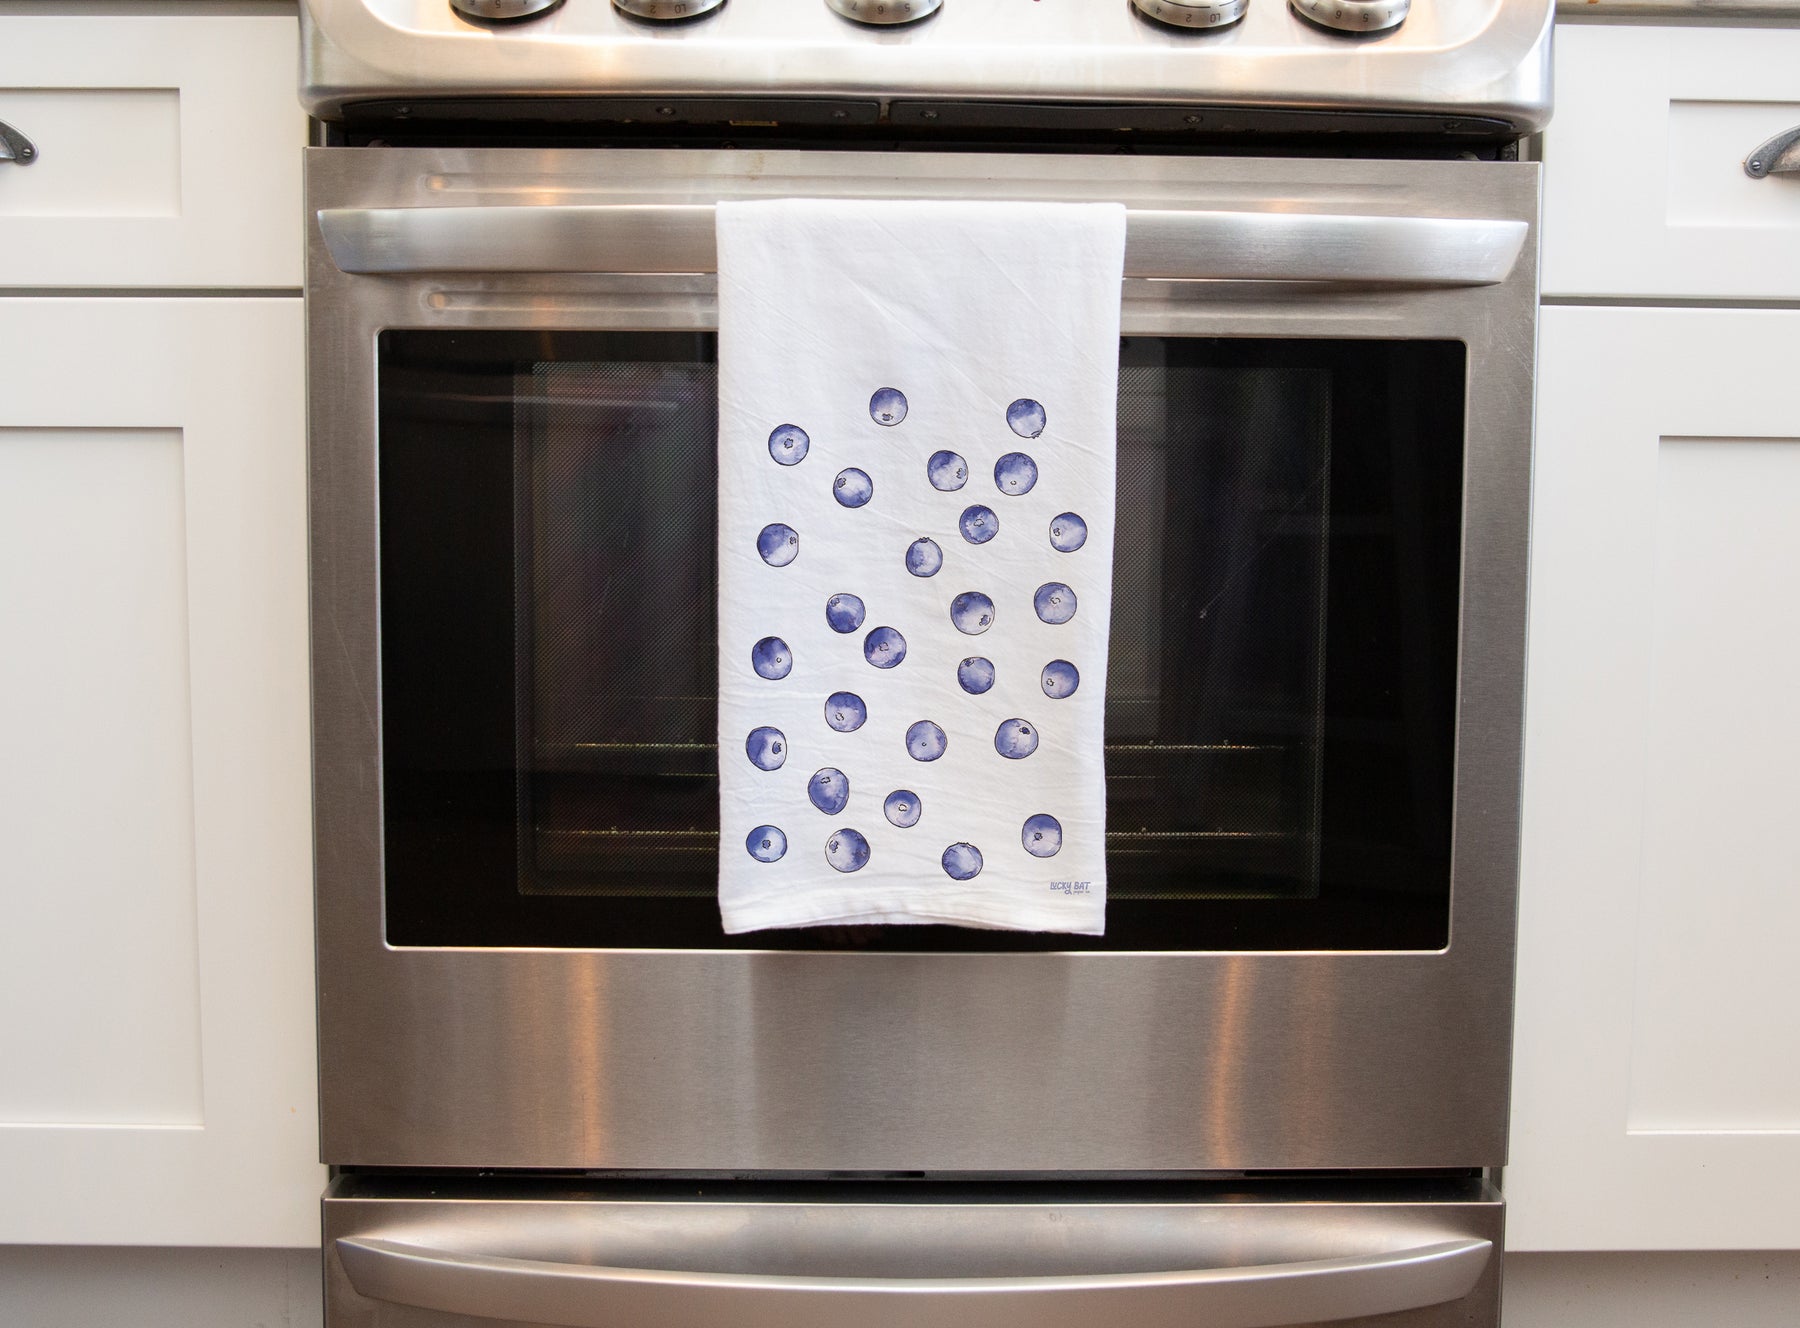 Blueberry Kitchen Towel